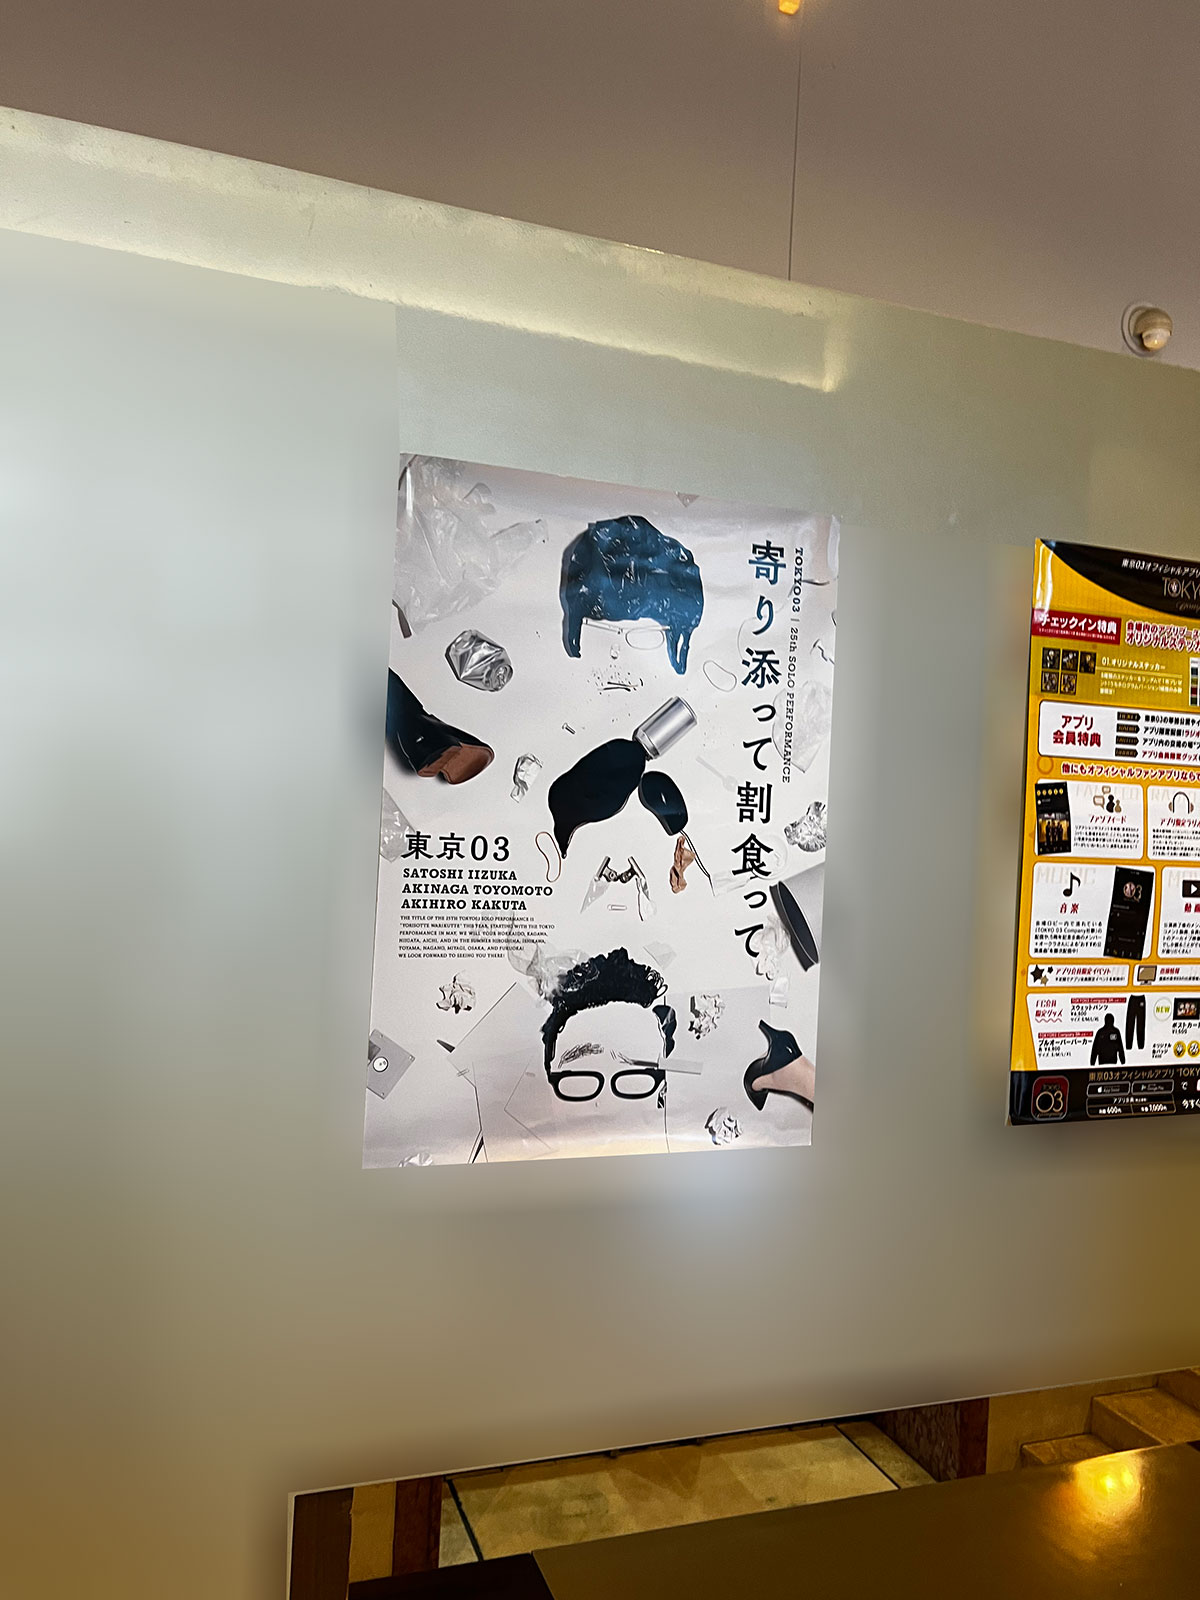 恵比寿ガーデンホール、ロビーに掲示された『第25回東京03単独公演「寄り添って割食って」』ポスター。